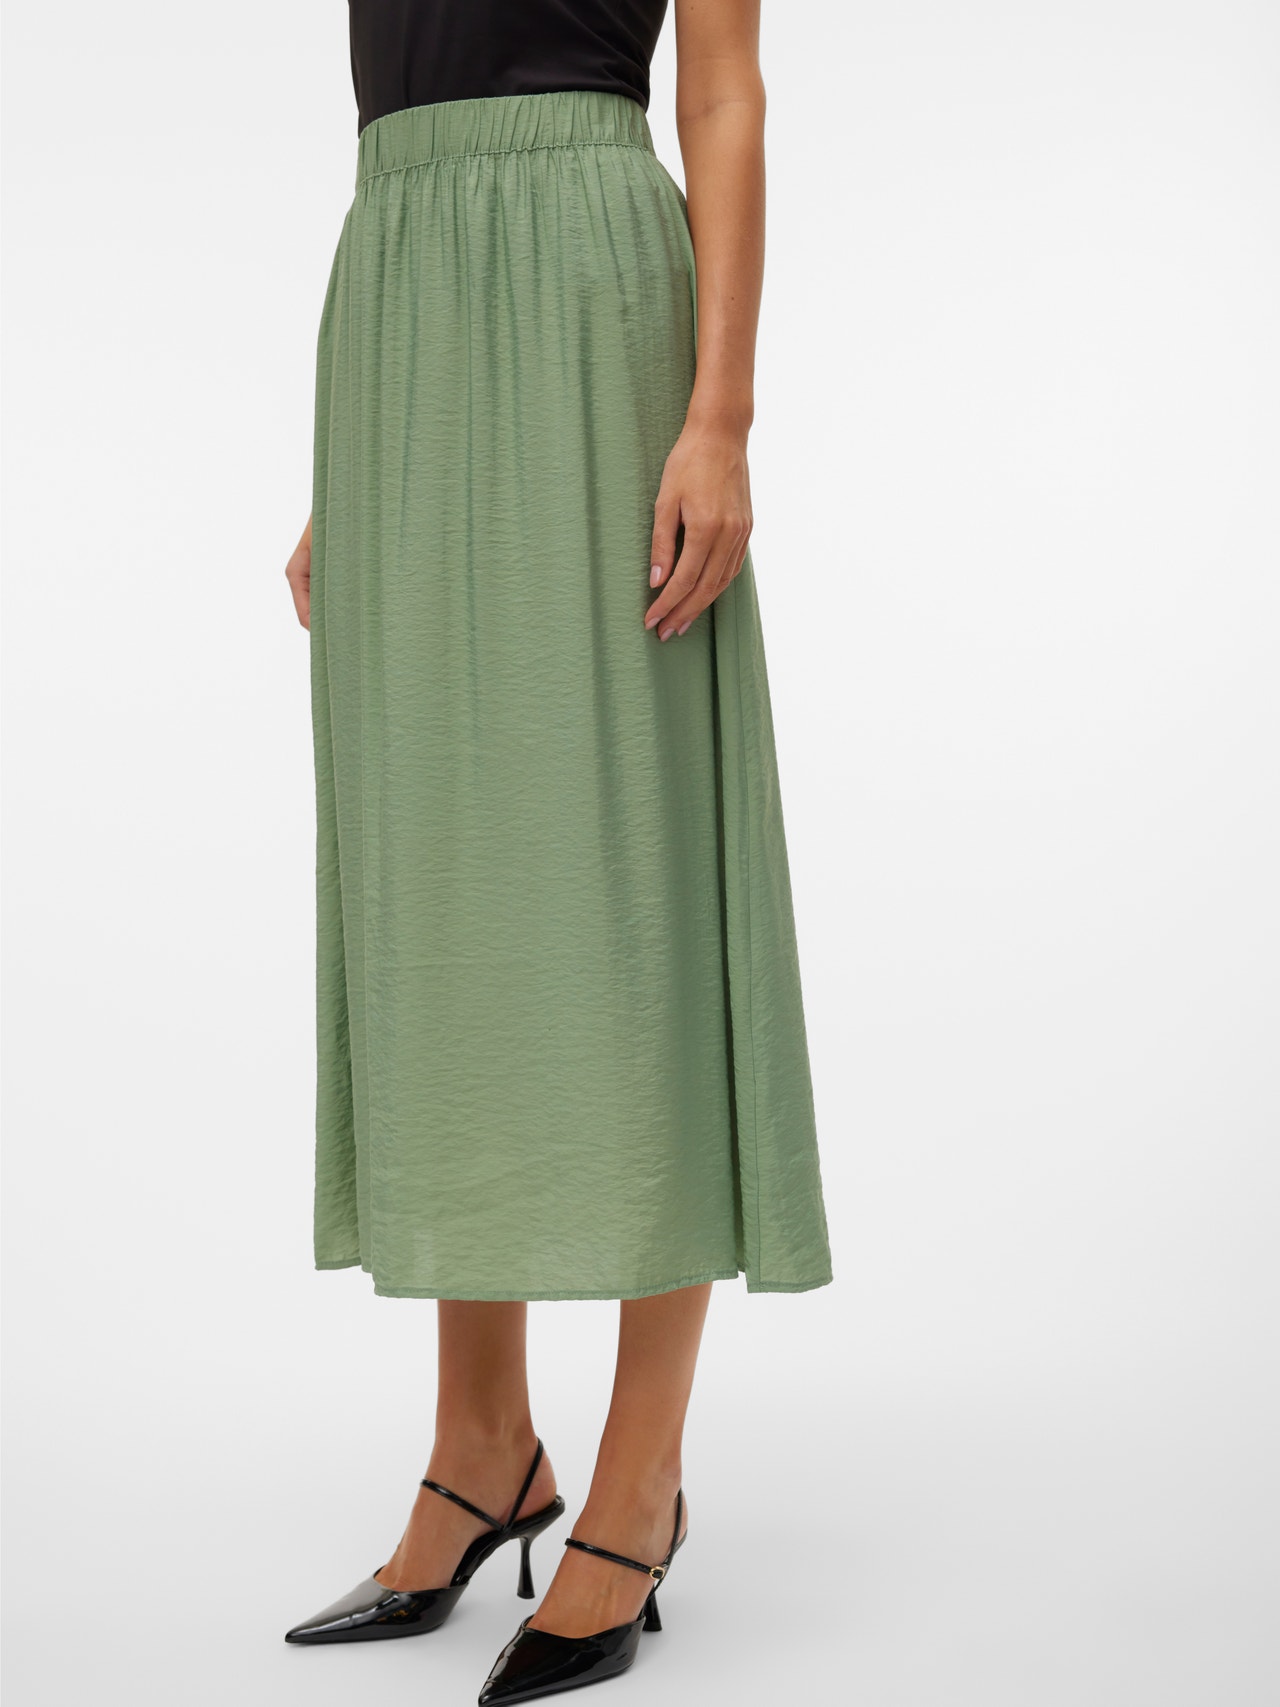 Vero Moda VMJOSIE Long Skirt -Hedge Green - 10303407